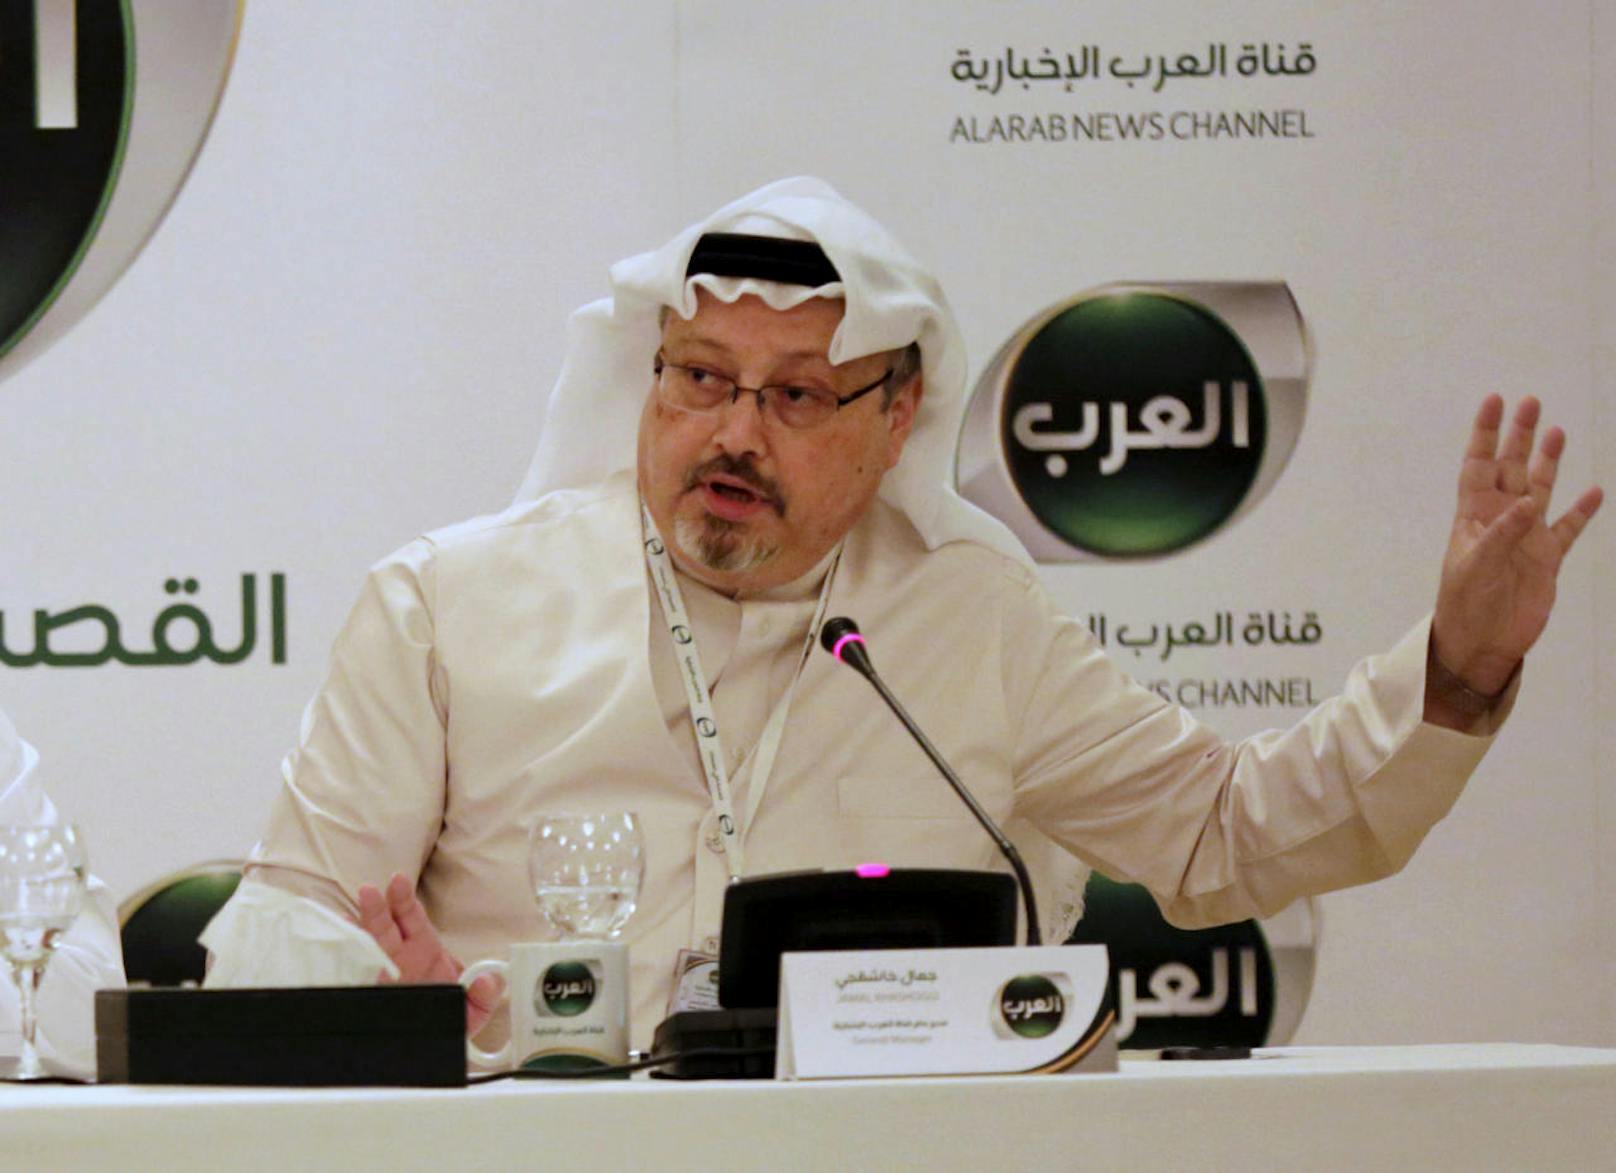 Saudi-Arabien hat am 19. Oktober den Tod des seit Wochen verschwundenen Journalisten Jamal Khashoggi bestätigt. Im Bild: Khashoggi während einer Konferenz in Manama, Bahrein im Februar 2015.